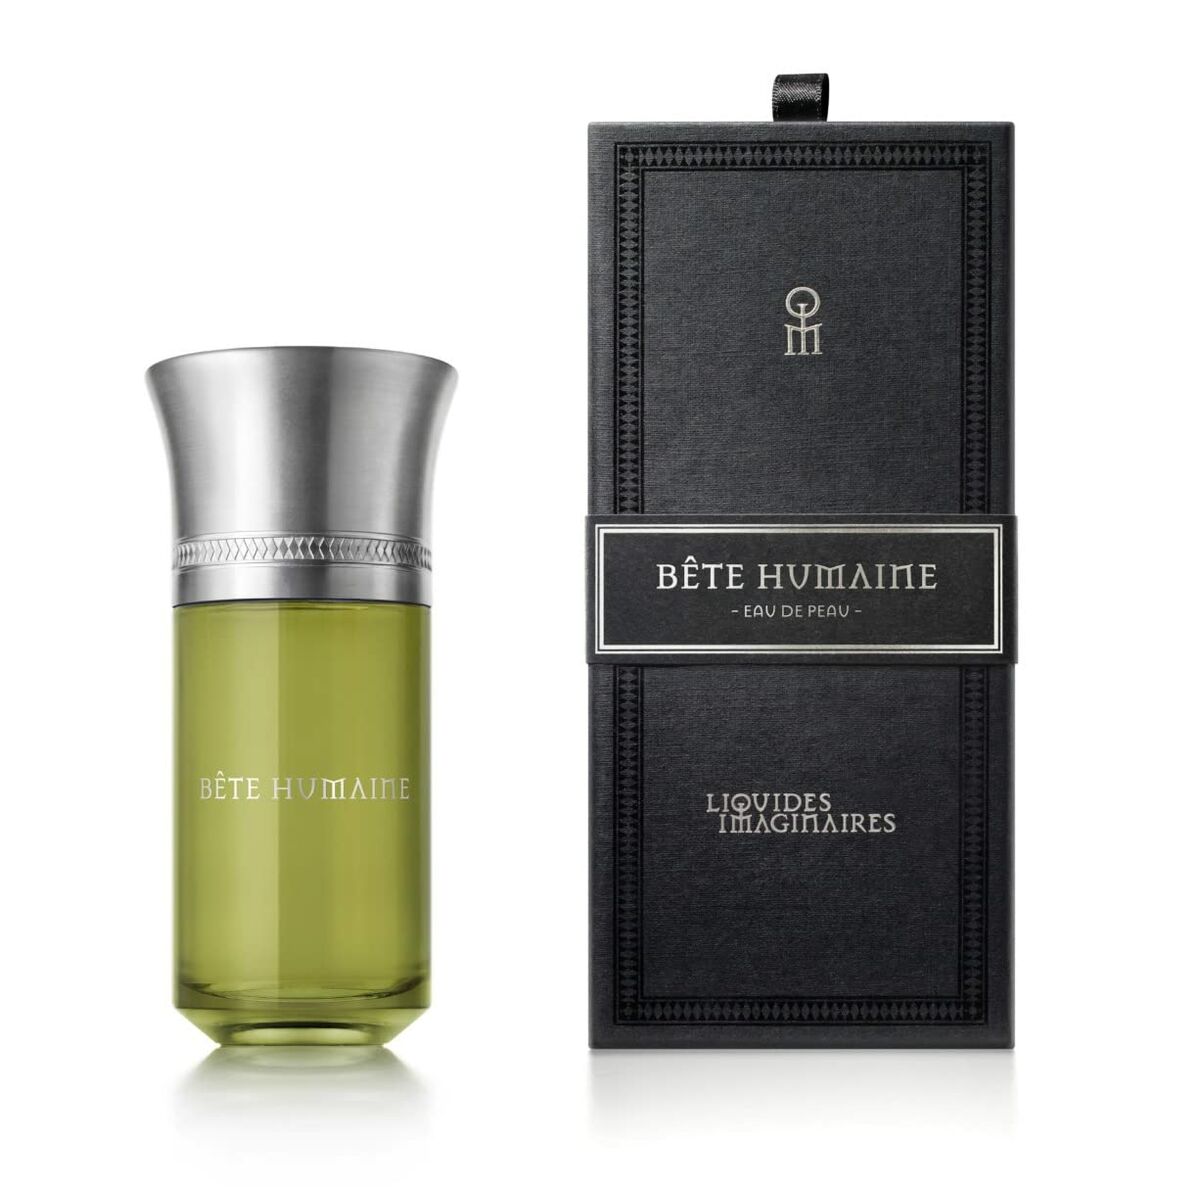 Parfum Unisex Liquides Imaginaires EDP Bete Humaine (100 ml)